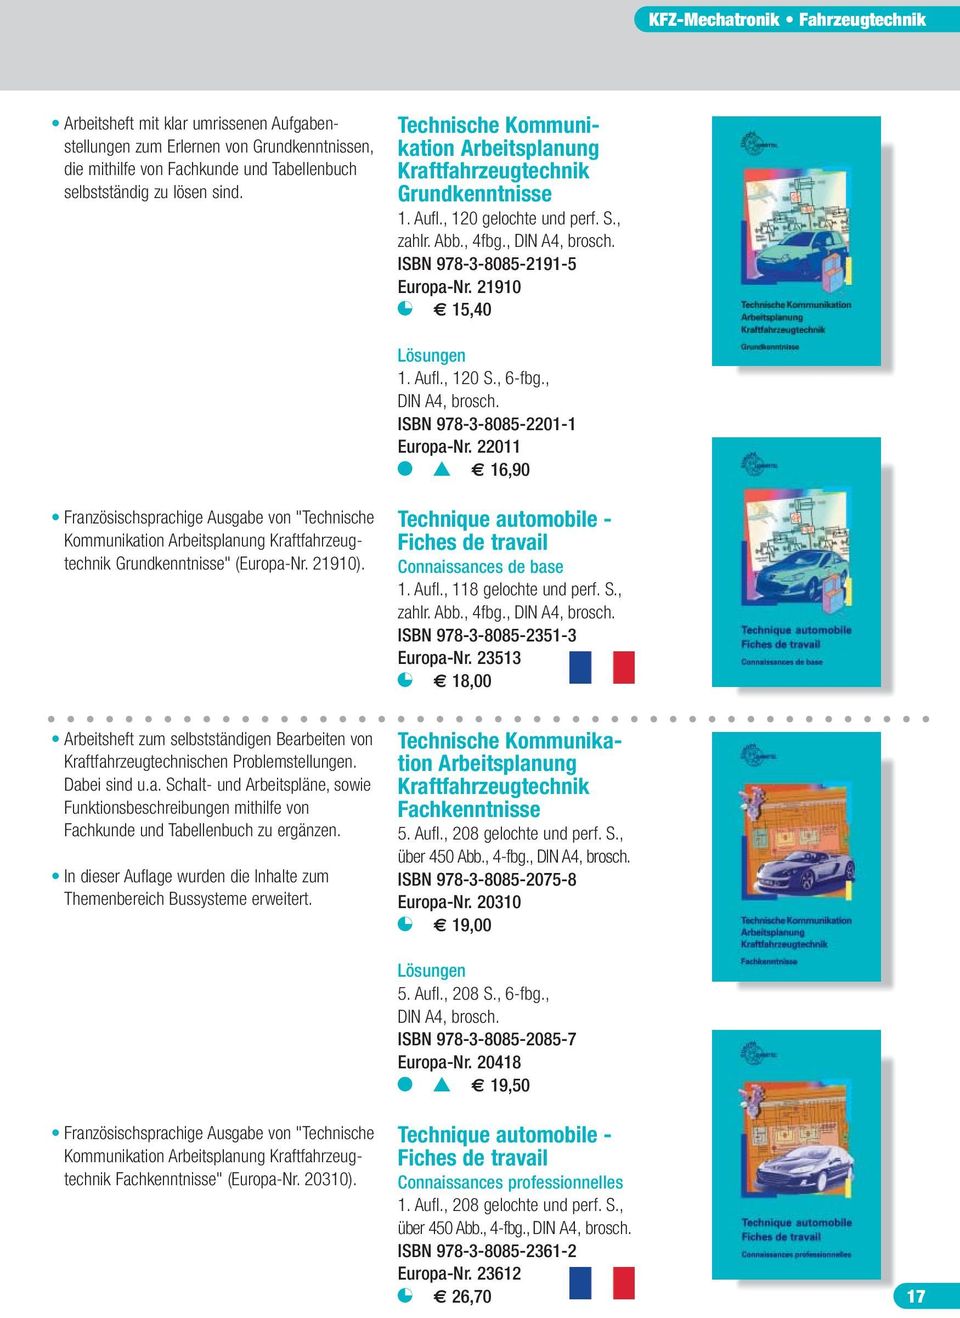 21910 V 15,40 Lösungen 1. Aufl., 120 S., 6-fbg., DIN A4, brosch. ISBN 978-3-8085-2201-1 Europa-Nr.